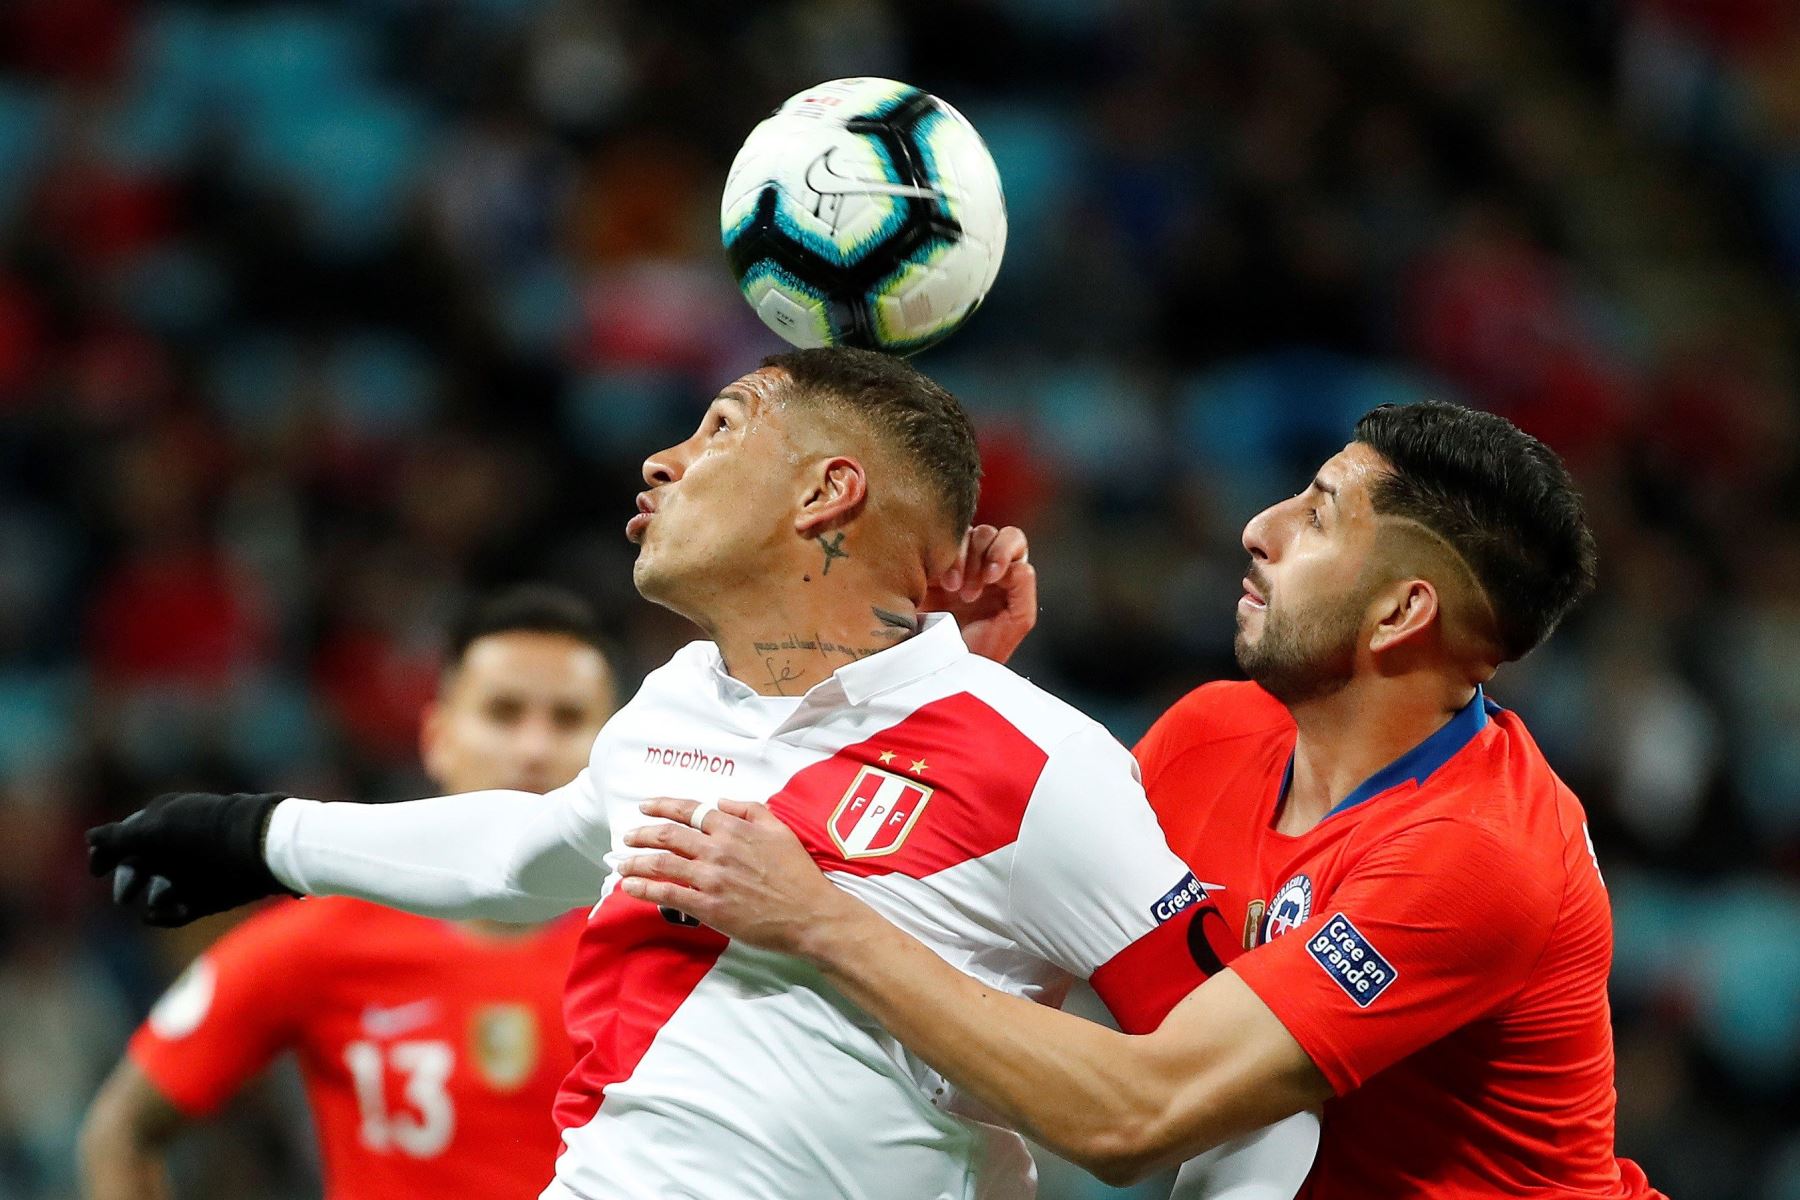 El jugador de Chile Guillermo Maripan (d) disputa el balón con Paolo Guerrero de Perú, durante el partido Chile-Perú de semifinales de la Copa América de Fútbol 2019.
Foto: AFP